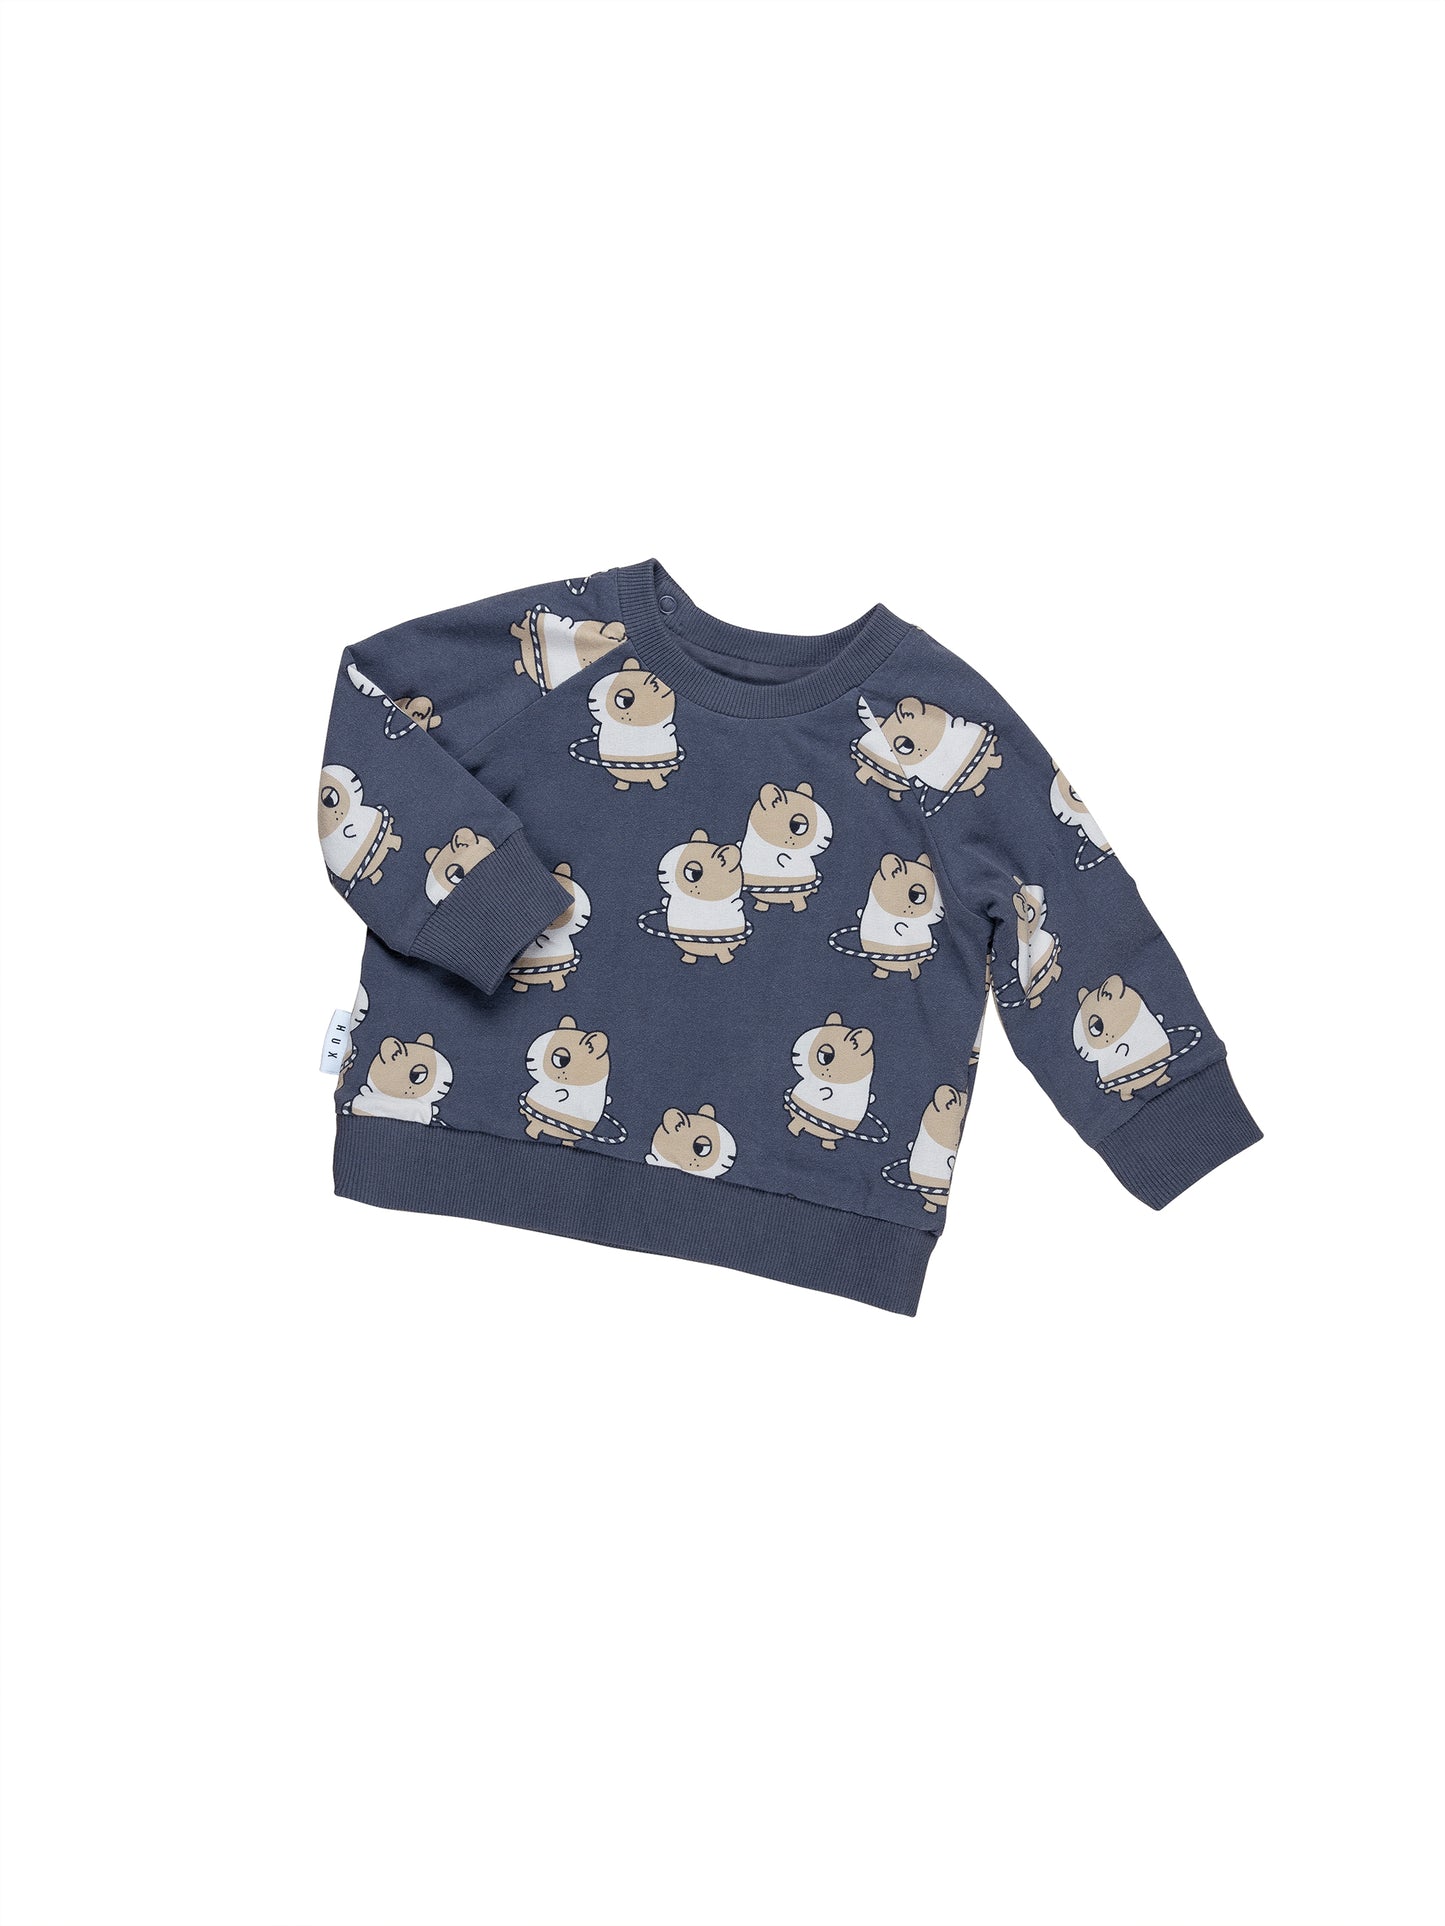 Huxbaby Hula Hamster Reversible Sweatshirt